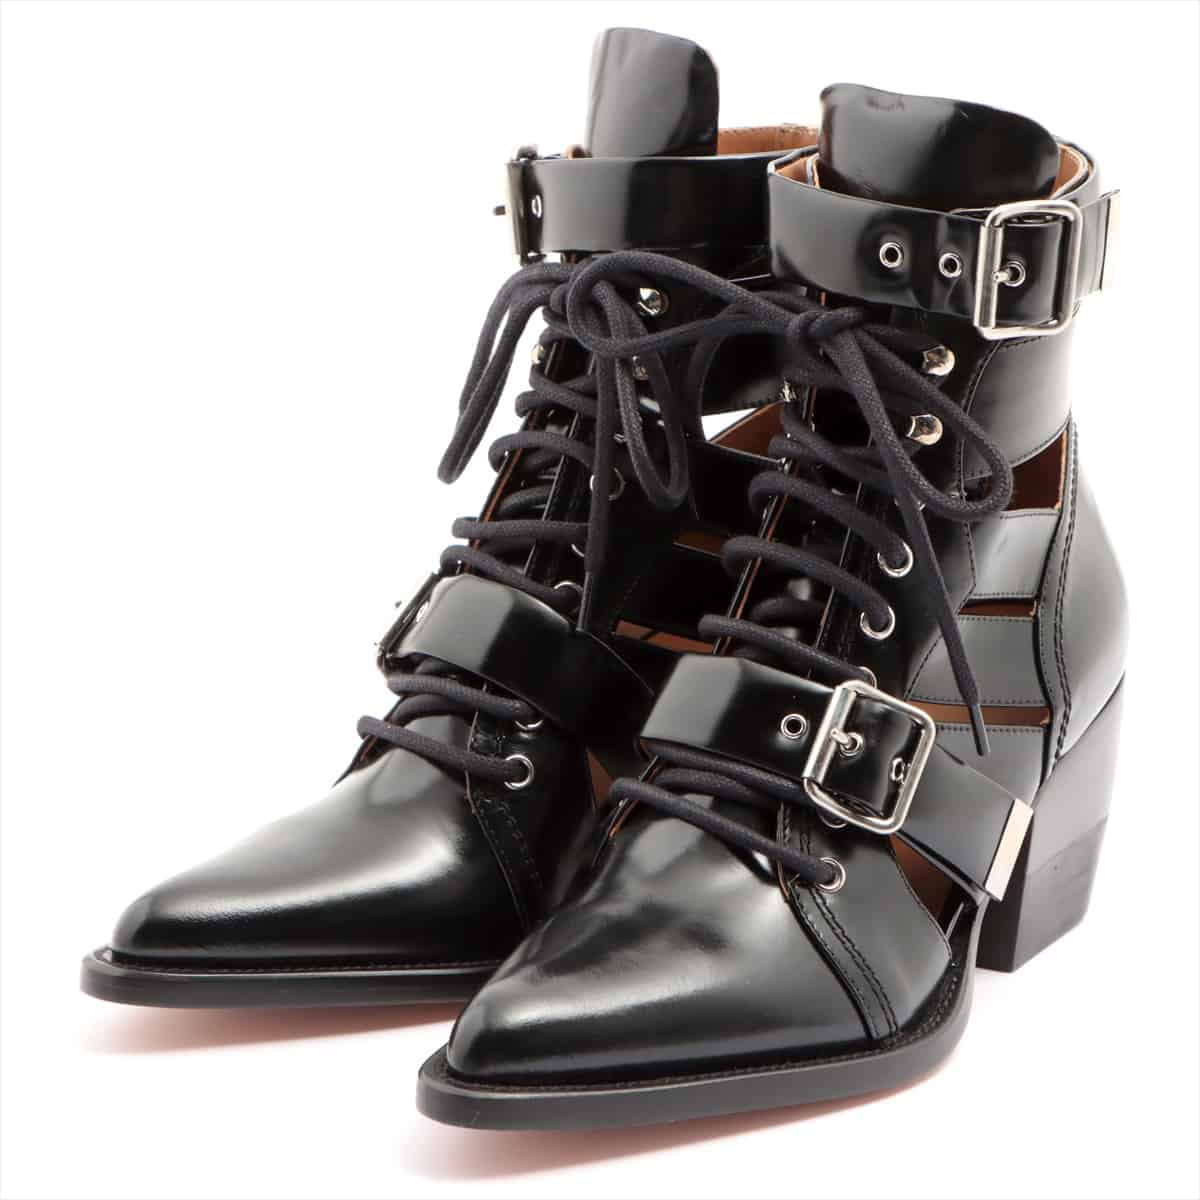 Chloe RYLEE Leather Boots 38.5 Ladies' Black